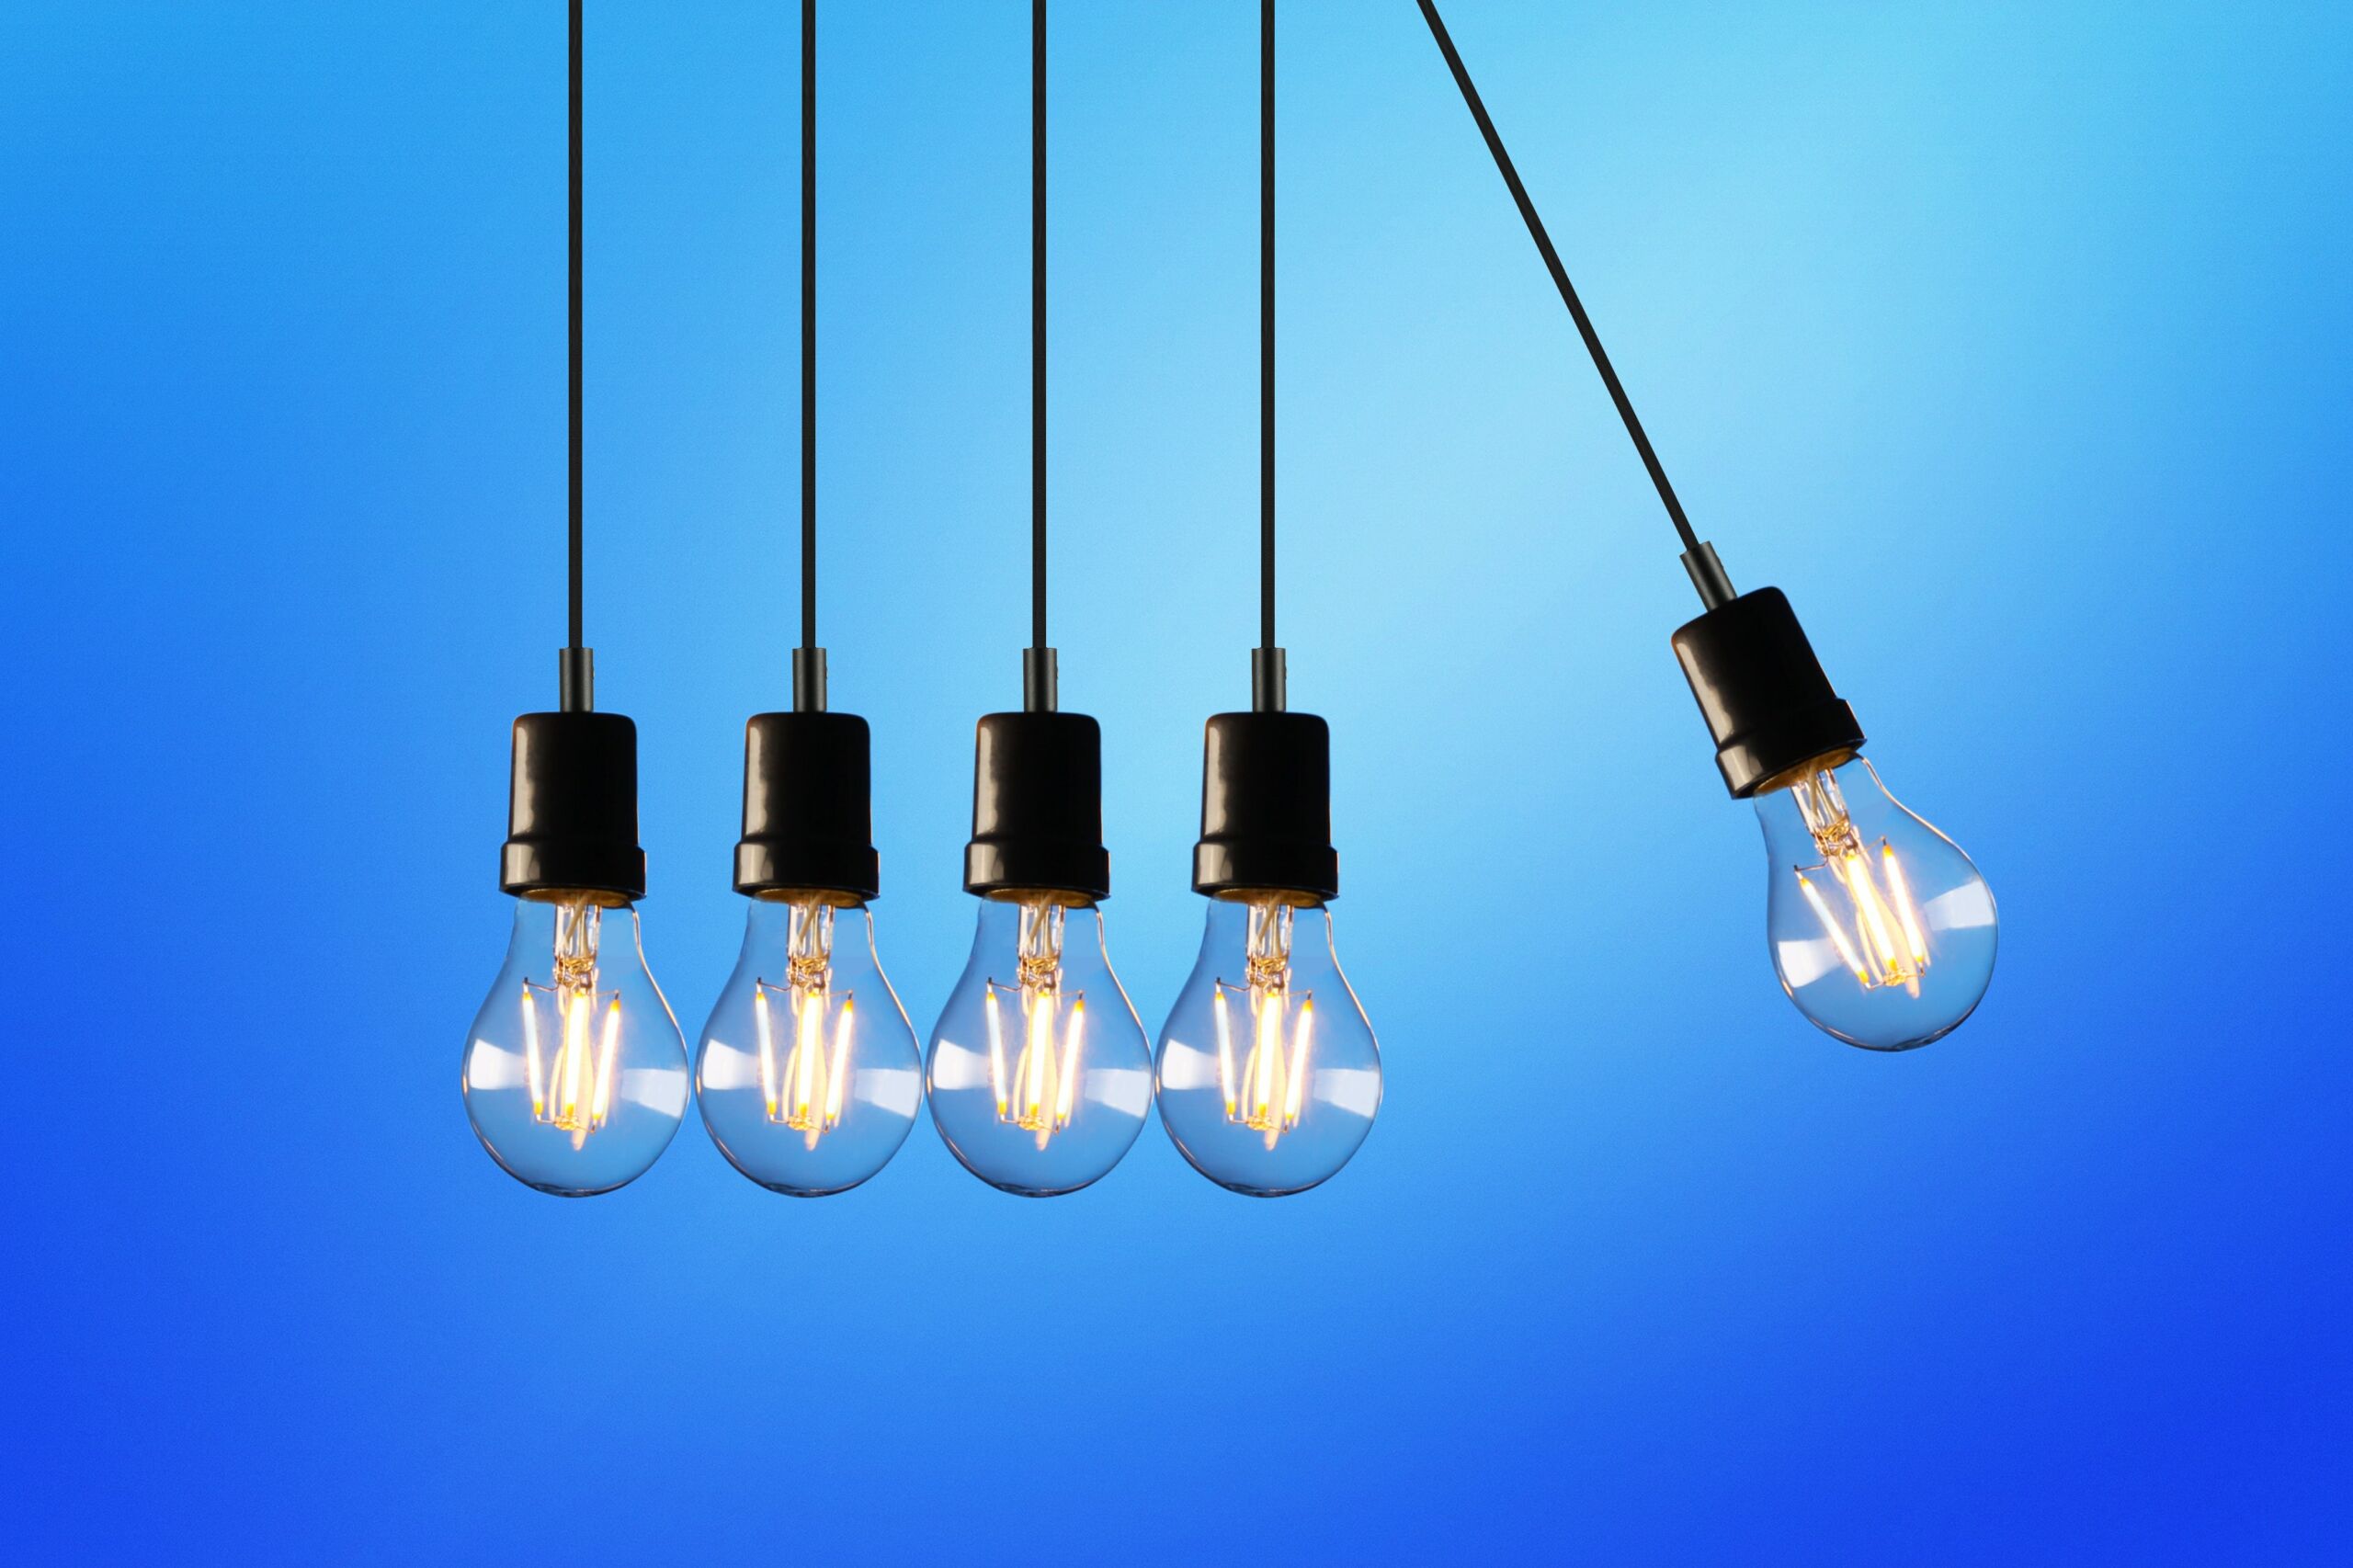 IT-Trends: 5 Glühbirnen hängen nebeneinander, wie ein Kugelstoßpendel.